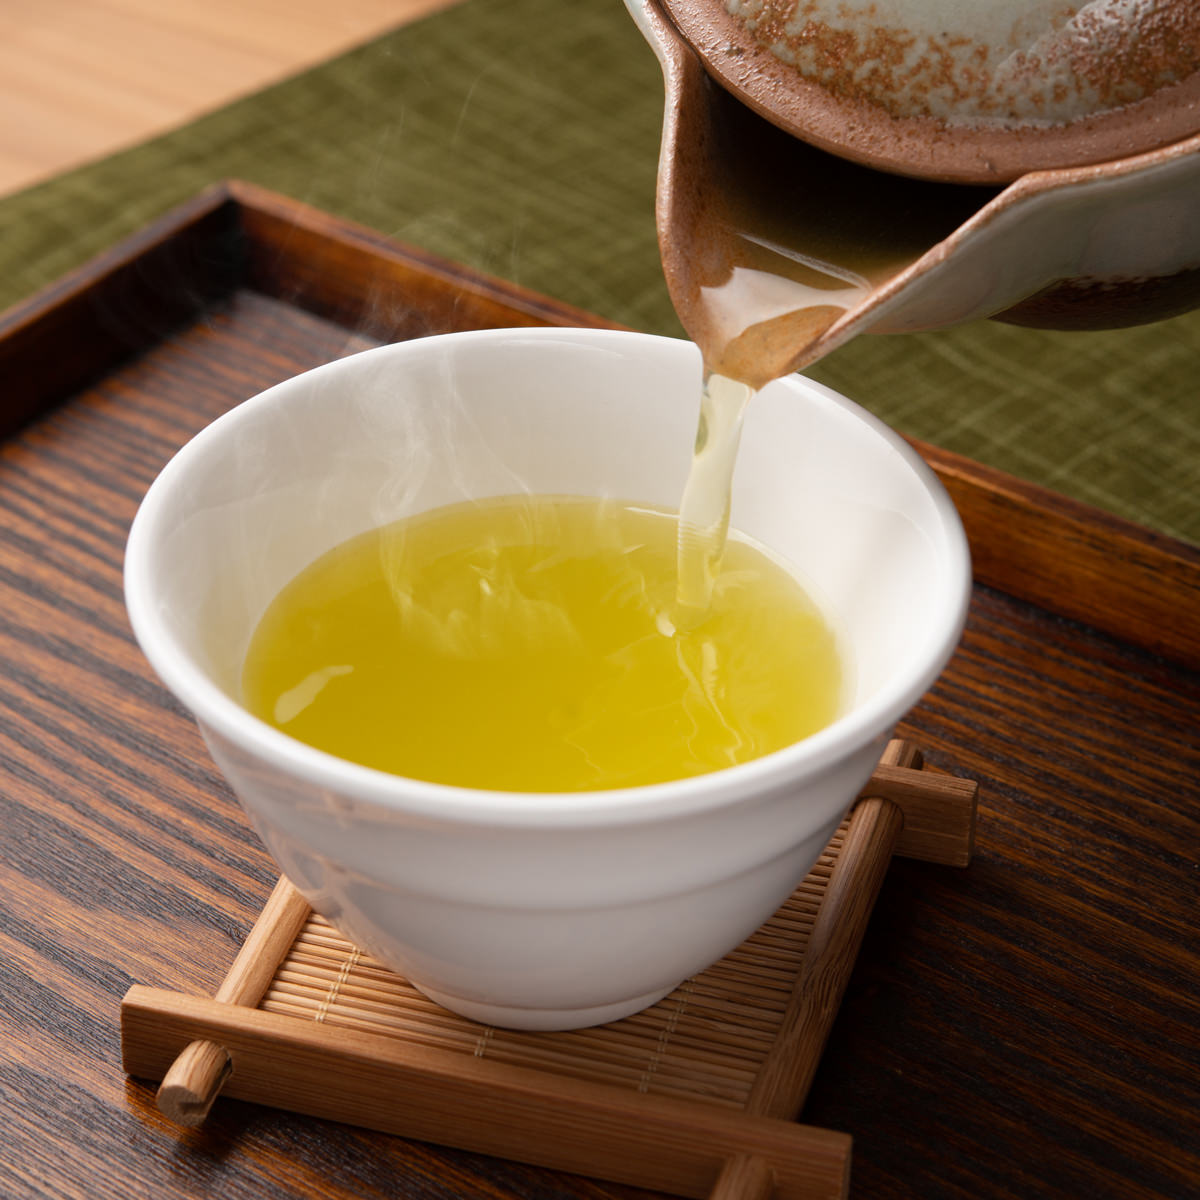 【路地栽培で茶葉の旨みにこだわった美味しい日本茶です】九州の太陽の光をたっぷり浴びた八女茶。「路地栽培」にて栽培したお茶はうぐいす色で、茶葉の内容成分が侵出しやすいよう、「深蒸し製法」にて加工していますので、茶葉の持つ濃厚な甘味や旨味と爽やかな渋味を楽しめます。癒される日本茶のかおりは茶葉ならでは。ご贈答用にもおすすめです。【名称】緑茶、日本茶【数量・内容】煎茶(100g)×2袋、白折(100g)×1袋【賞味期間】製造日より365日【原材料】緑茶類似商品はこちら嬉野茶 2袋 セット 嬉野茶白折 緑茶 日本茶3,628円徳用 狭山茶 3袋 セット お茶 緑茶 茶葉 5,080円嬉野茶 高級 詰合せ 3袋 セット 嬉野茶白折3,628円狭山 味自慢 4袋 セット お茶 緑茶 茶葉 5,080円緑茶 種子島茶 セット 2種 松寿 たねがしま6,757円煎茶 自然と人をつなぐお茶 100g 静岡県産2,209円嬉野茶 バラエティセット 茶葉 ティーバッグ 3,240円嬉野玉緑茶ギフト 嬉野茶 茶葉 ティーバッグ 6,986円緑茶 岡女男面茶 3種 詰め合わせ 銘茶 特選6,594円新着商品はこちら2024/5/20豆酩 豆腐のもろみ漬け 3個セット 豆腐 発酵3,918円2024/5/20いちじくジャム2本と星イチジク1袋セット 2種3,045円2024/5/20M-天の川1kg木箱 玉井製麺所 奈良県 伝統4,550円再販商品はこちら2024/5/20送料無料 房子さんの 60g×6袋 あぐりの里2,583円2024/5/16富錦樹 フージンツリー 人気メニュー食べ比べセ10,900円2024/5/16石川のひとくち玄米チップス サクザク 25g×3,368円